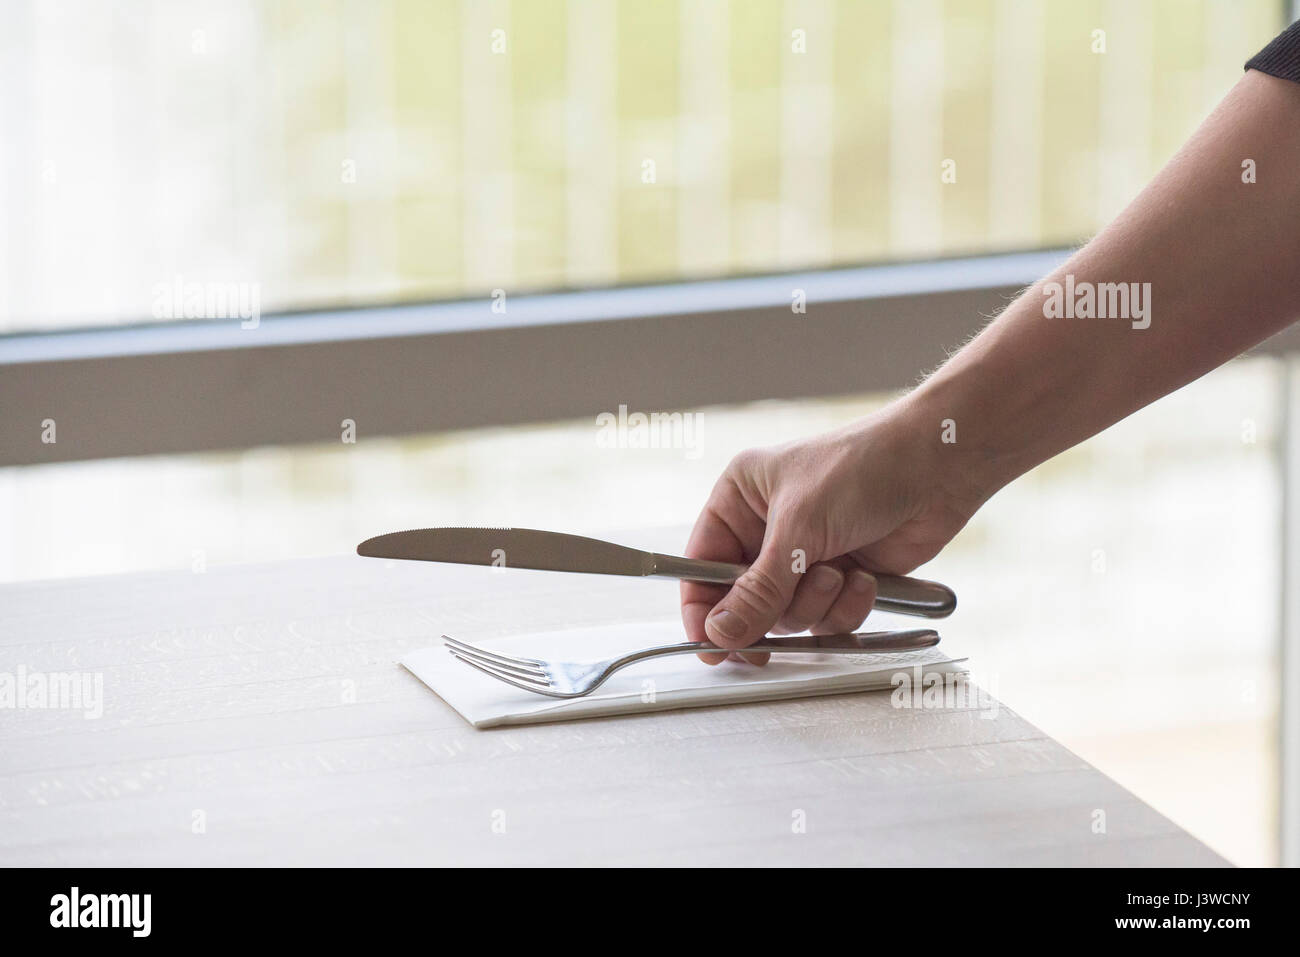 Besteck platziert auf einem Tisch im Restaurant Messer und Gabel Serviette Serviette Einstellung eine Tabelle Kellnerin Hand Arm Stockfoto